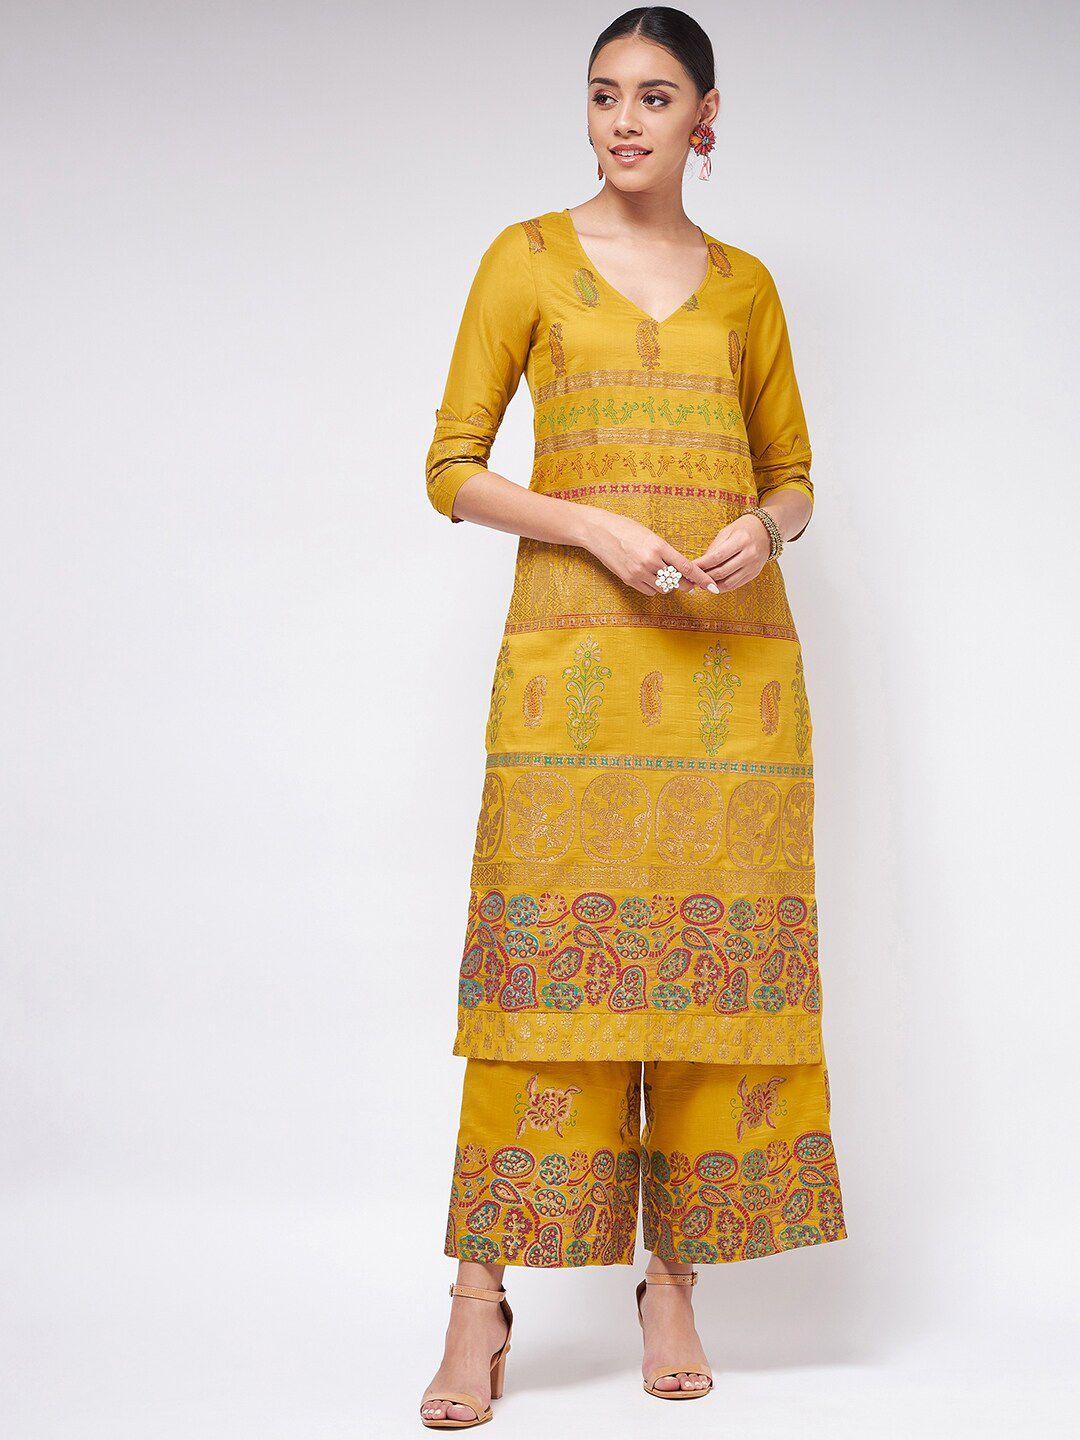 pannkh women yellow ethnic motifs printed kurta with palazzos